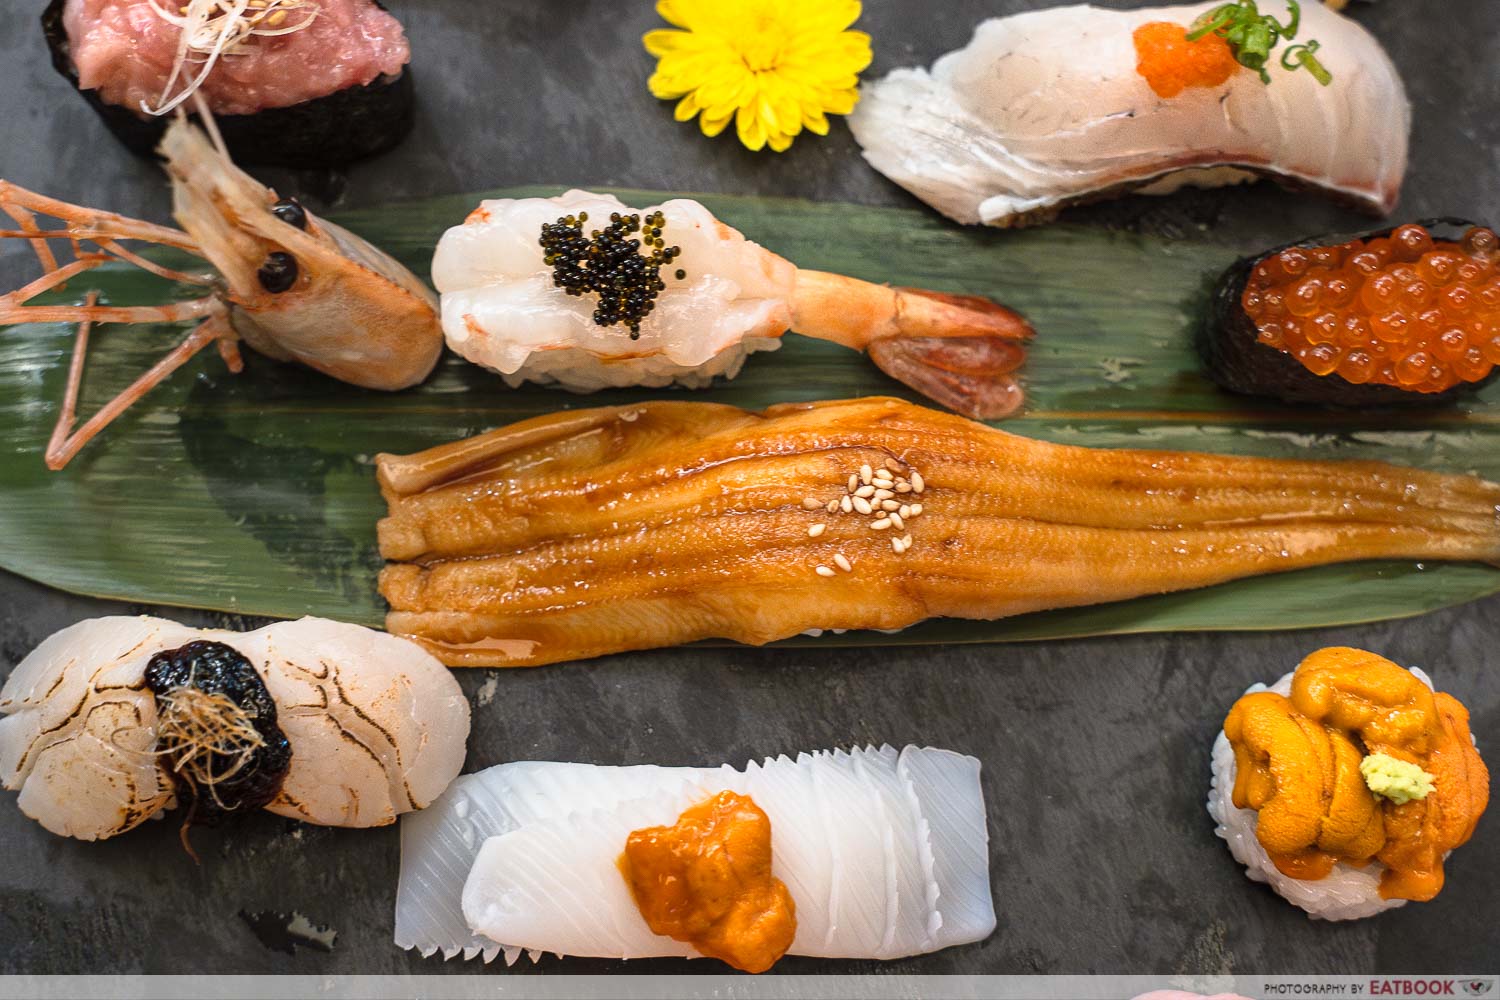 sen-ryo suntec - sushi platter